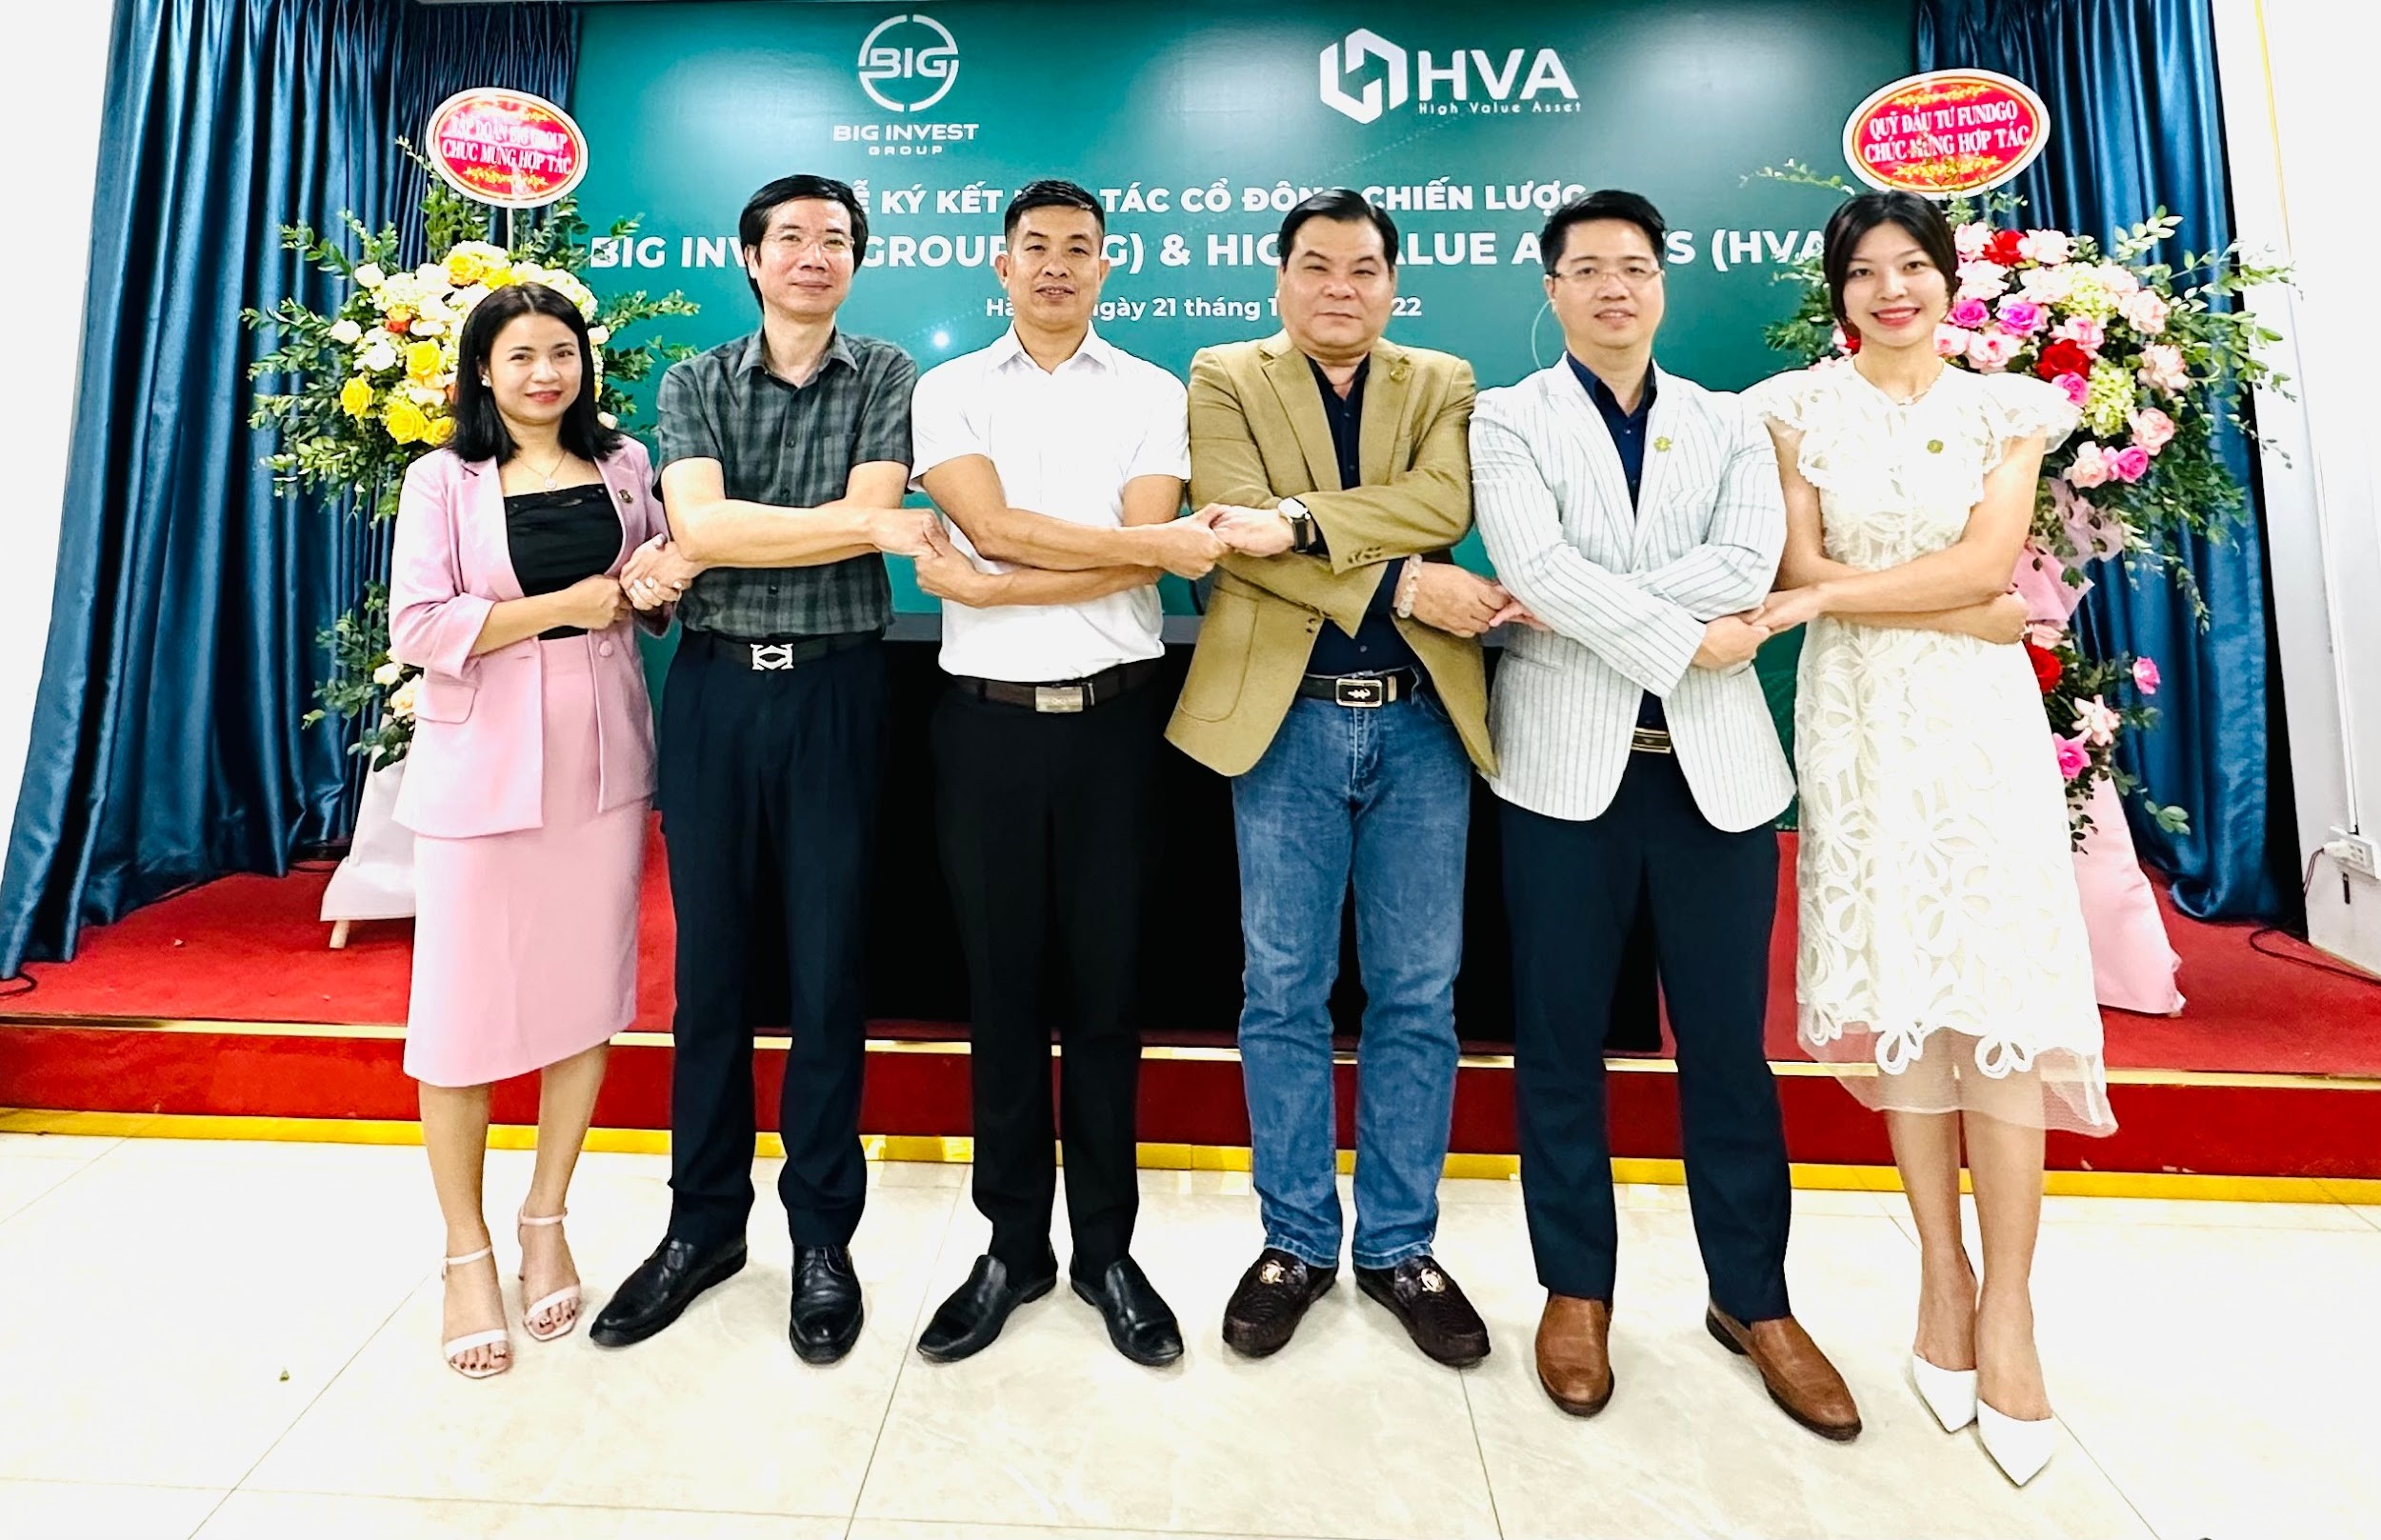 BIG founder Vo Phi Nhat Huy officially transferred 12% of shares to major shareholder HVA